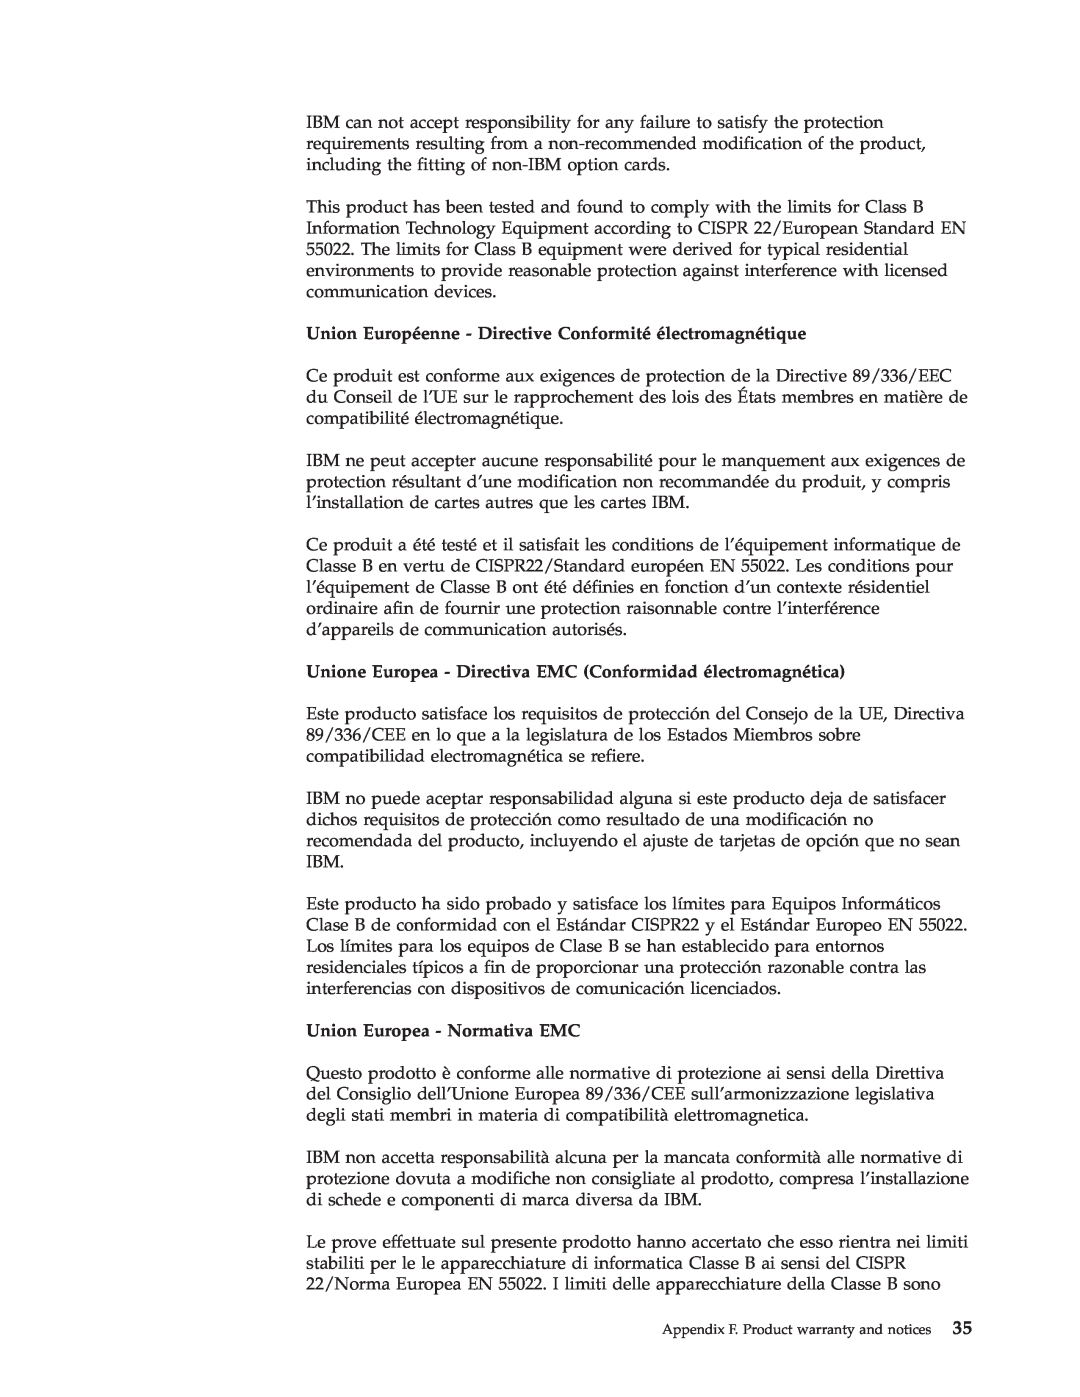 IBM HH LTO manual Union Européenne - Directive Conformité électromagnétique, Union Europea - Normativa EMC 